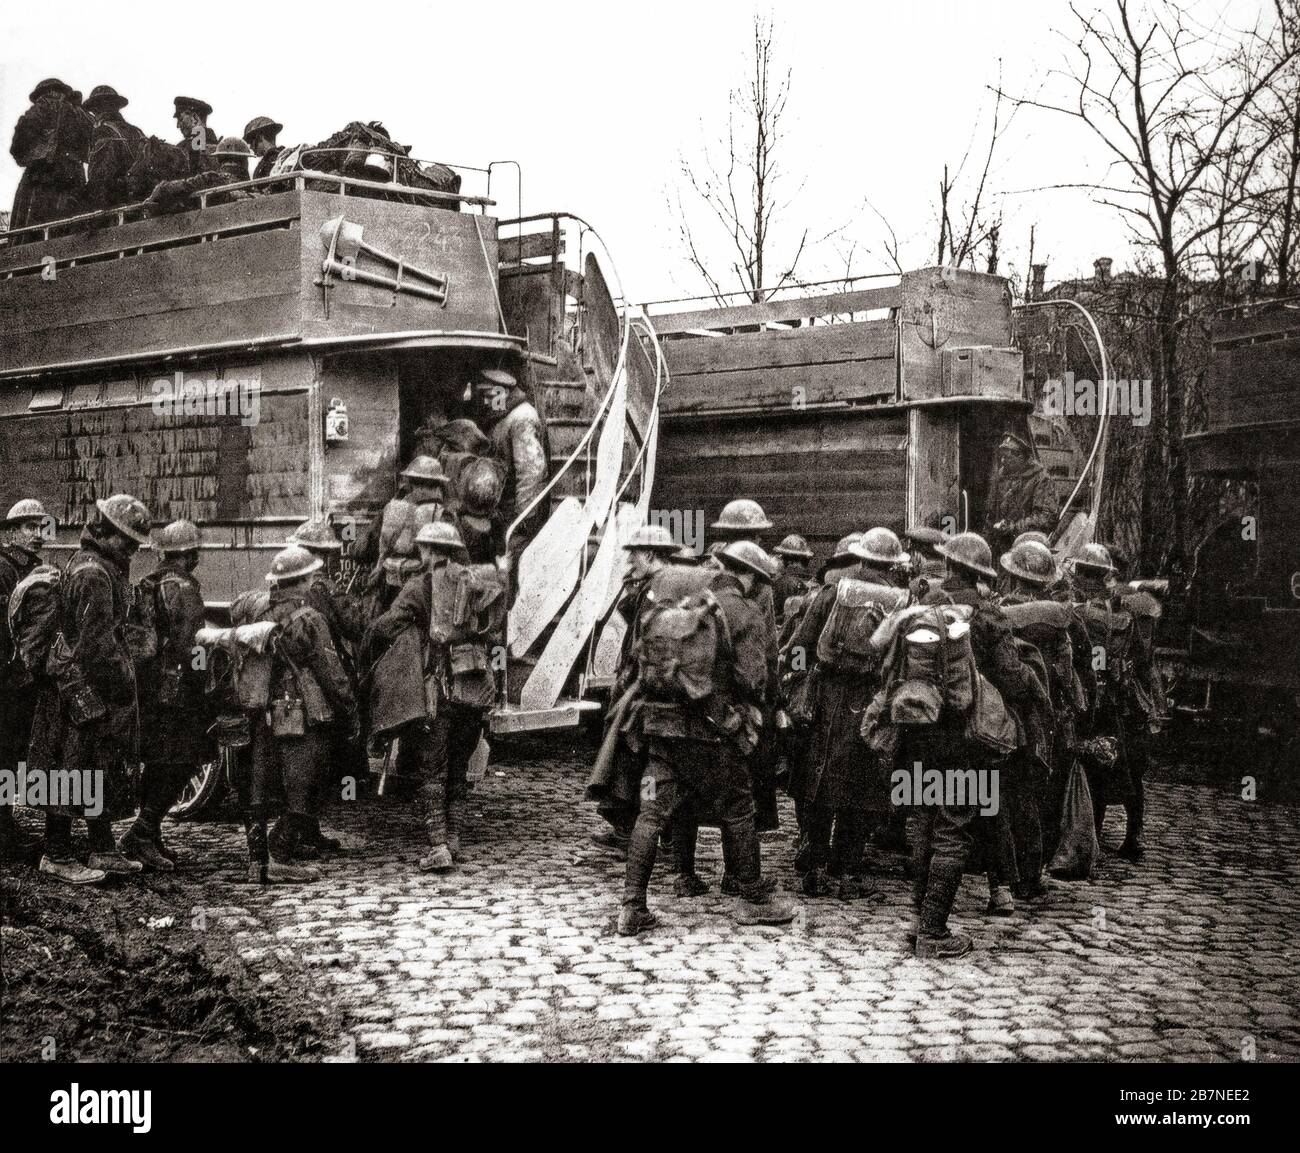 Les troupes britanniques qui ont embarquement ont converti des bus londoniens à Arras, capitale du département du pas-de-Calais, sur leur chemin pour se reposer et se détendre. Près de 1 000 autobus ont été utilisés sur le front occidental pour transporter des troupes pendant la première Guerre mondiale. Banque D'Images